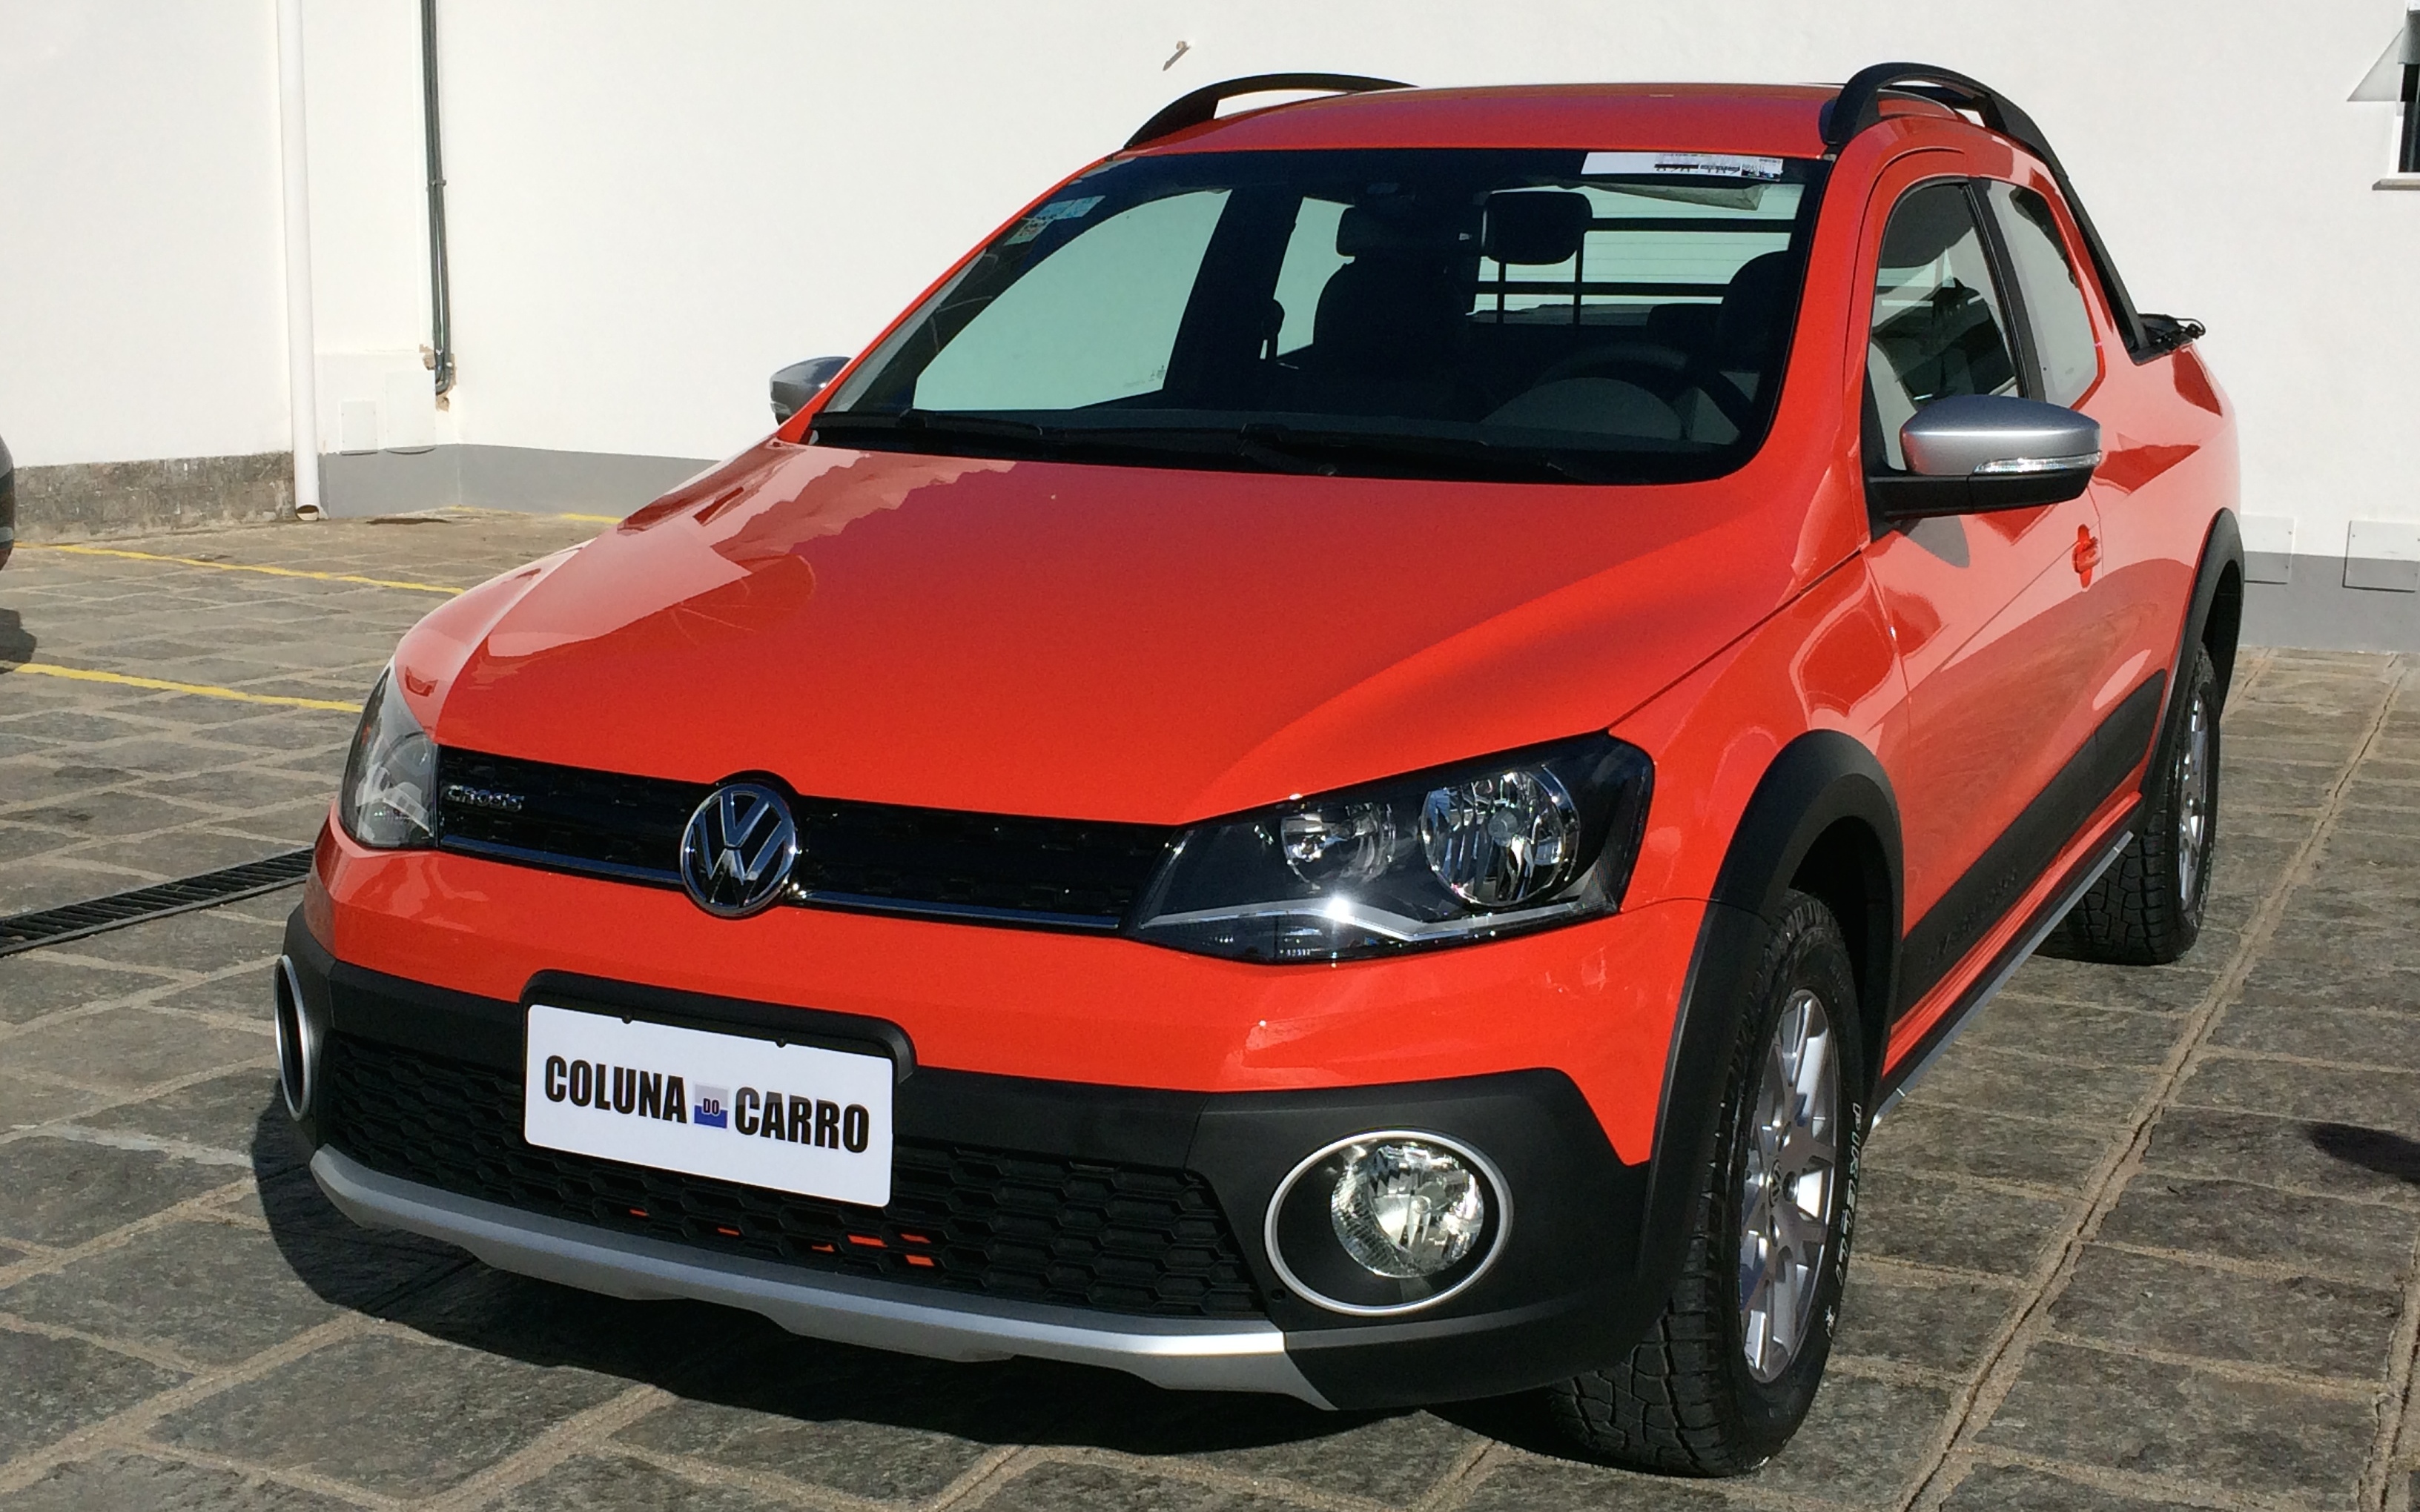 Volkswagen Saveiro Cross Dupla 1.6 2015 A venda! #saveirocross